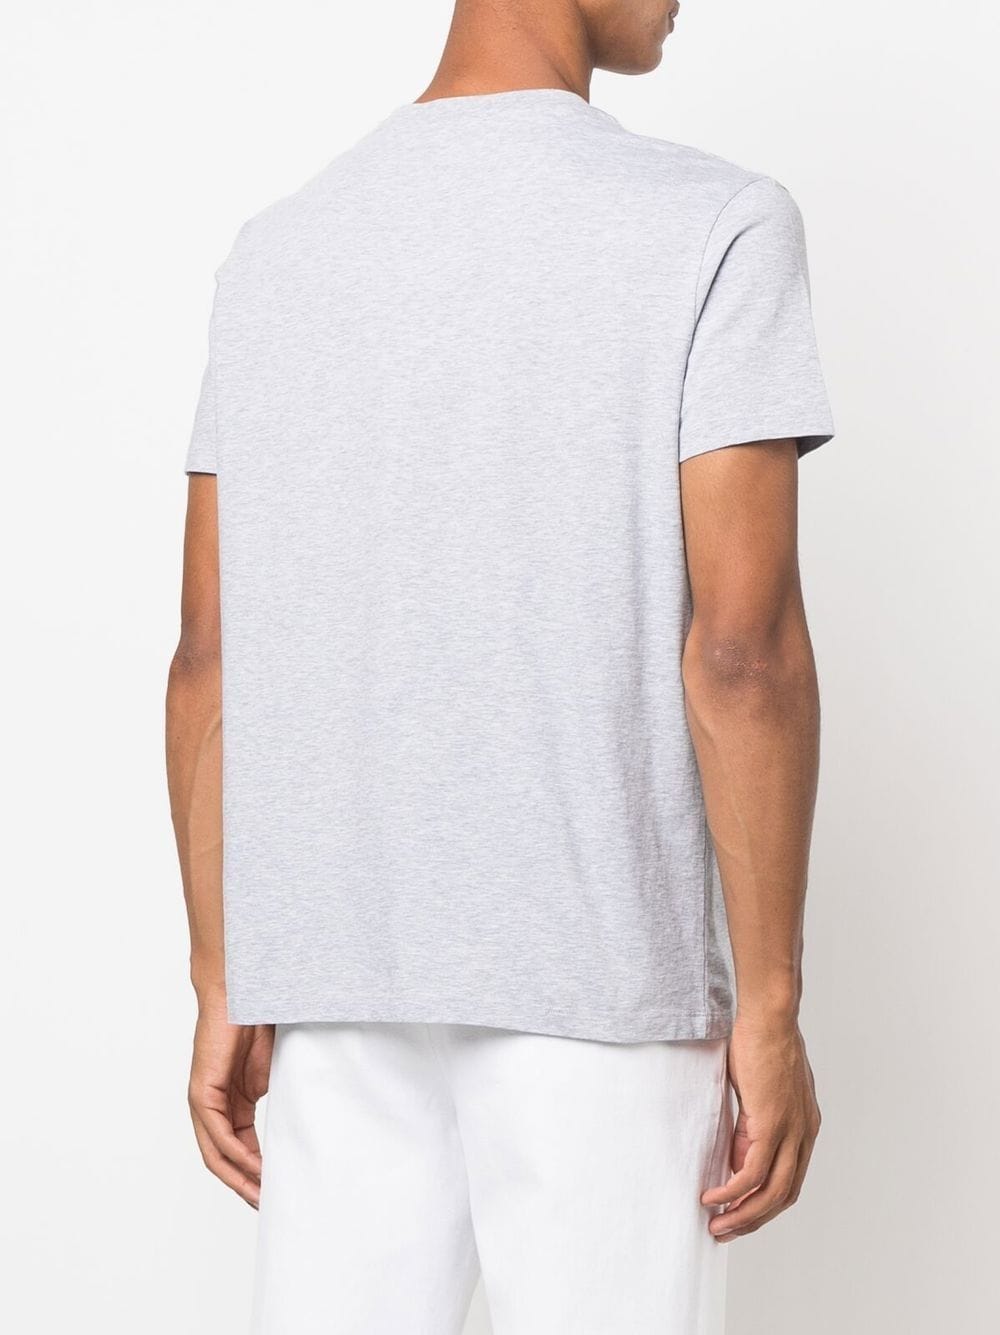 Pegaso-print cotton T-shirt